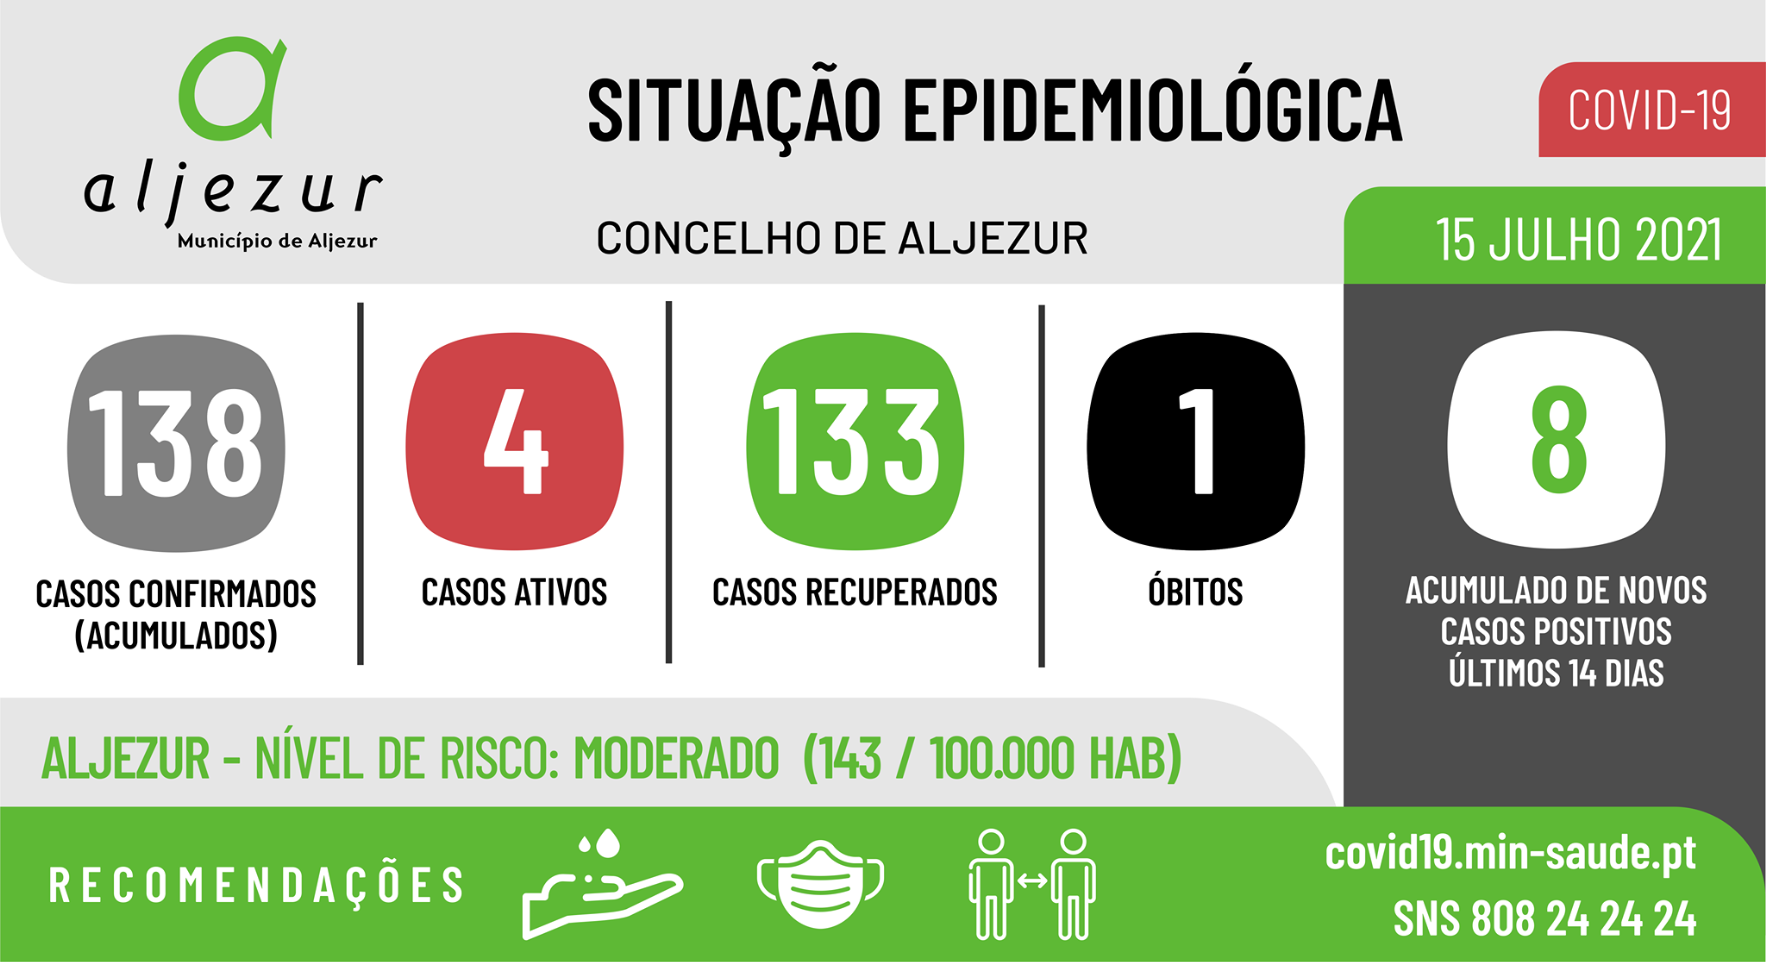 COVID-19: Situação epidemiológica em Aljezur [15/07/2021]